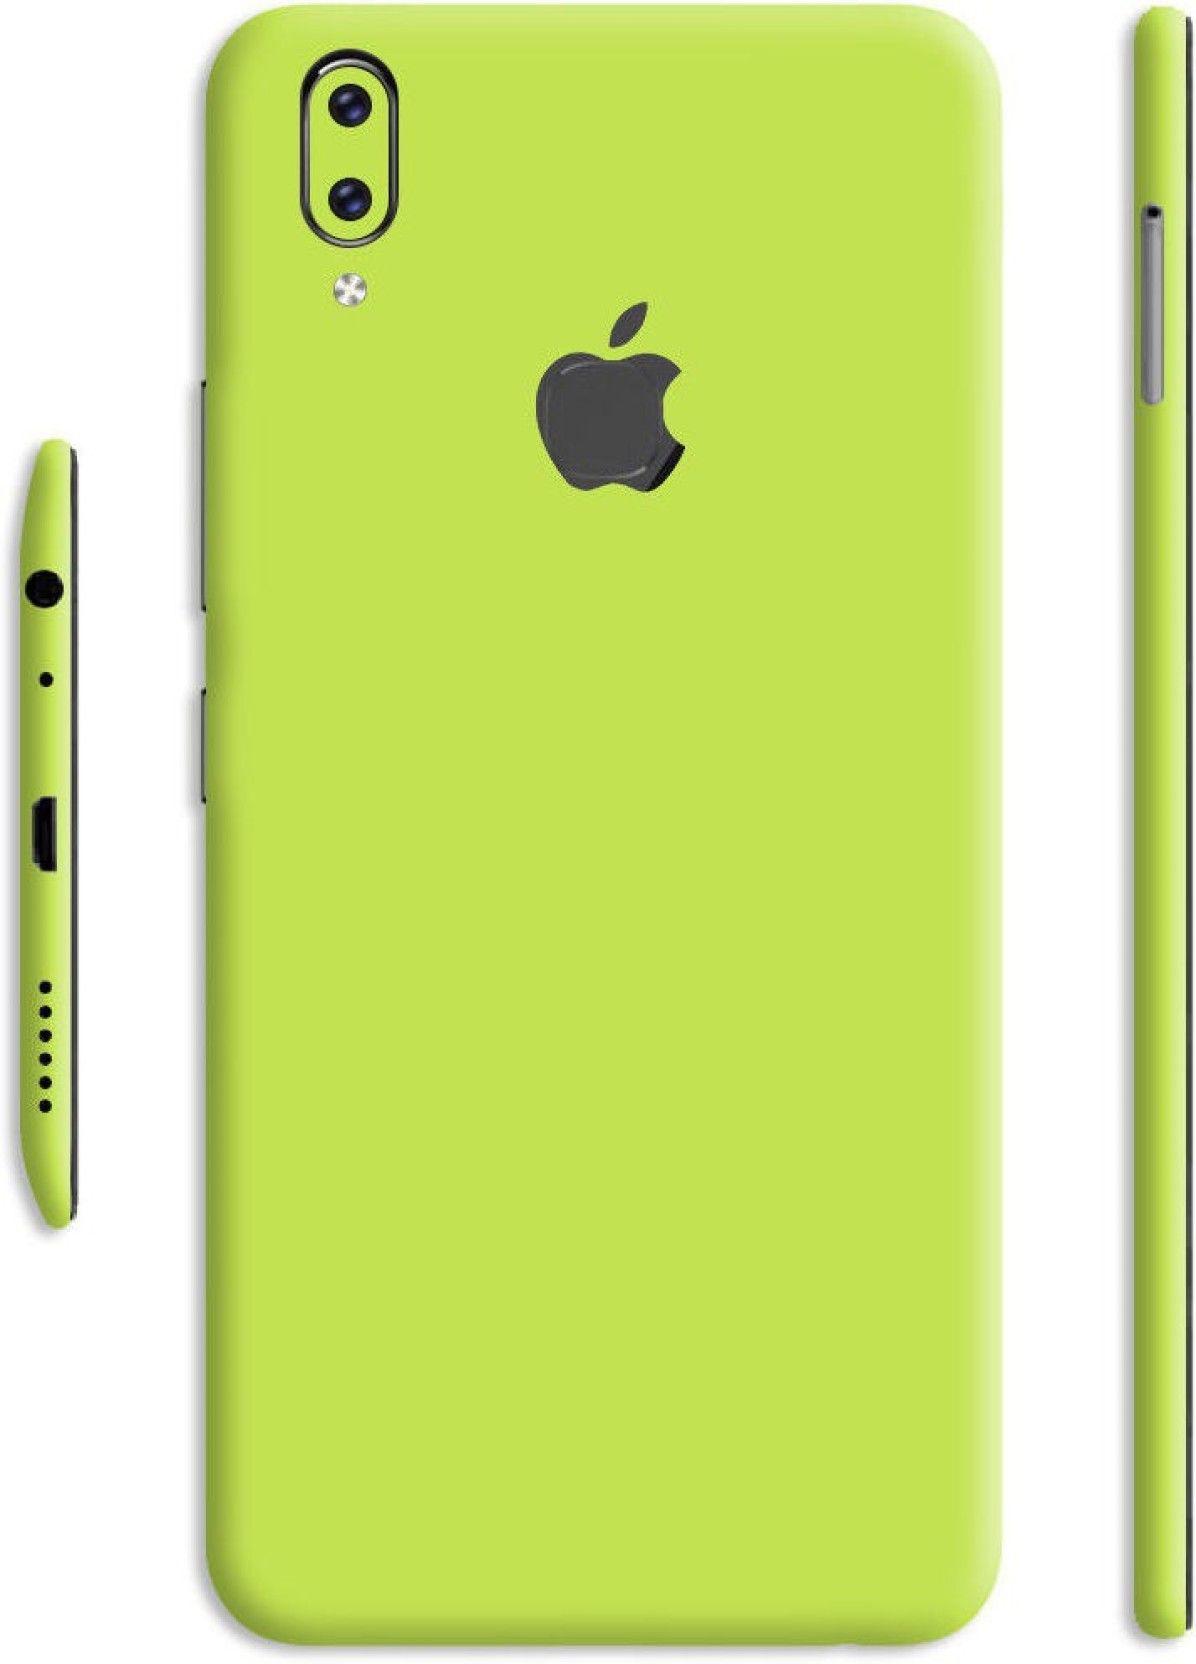 Lemon Phone Logo - SLICKWRAPS Skin 1744 Apple Logo Lemon Green Glossy Skin